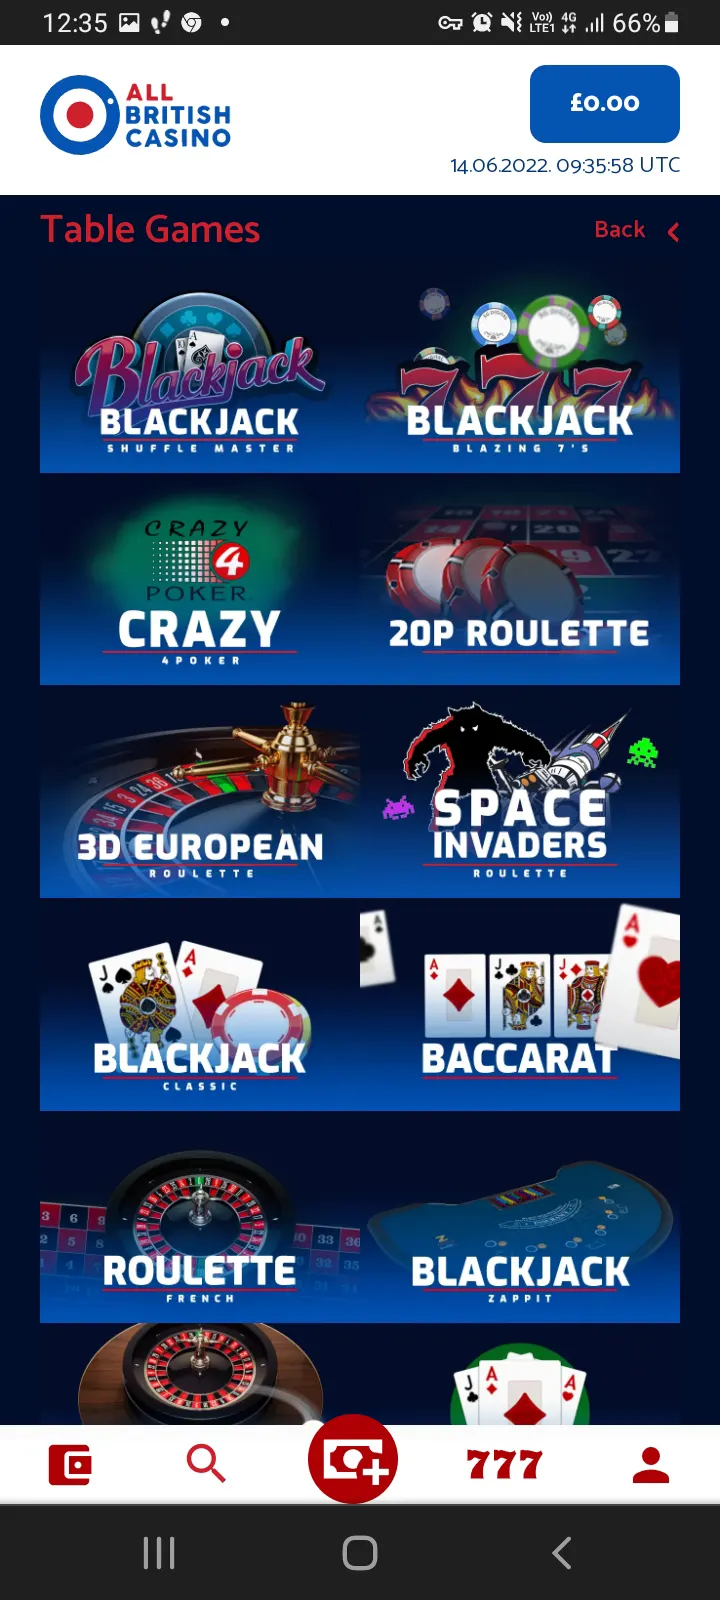 All British casino app screenshot 3